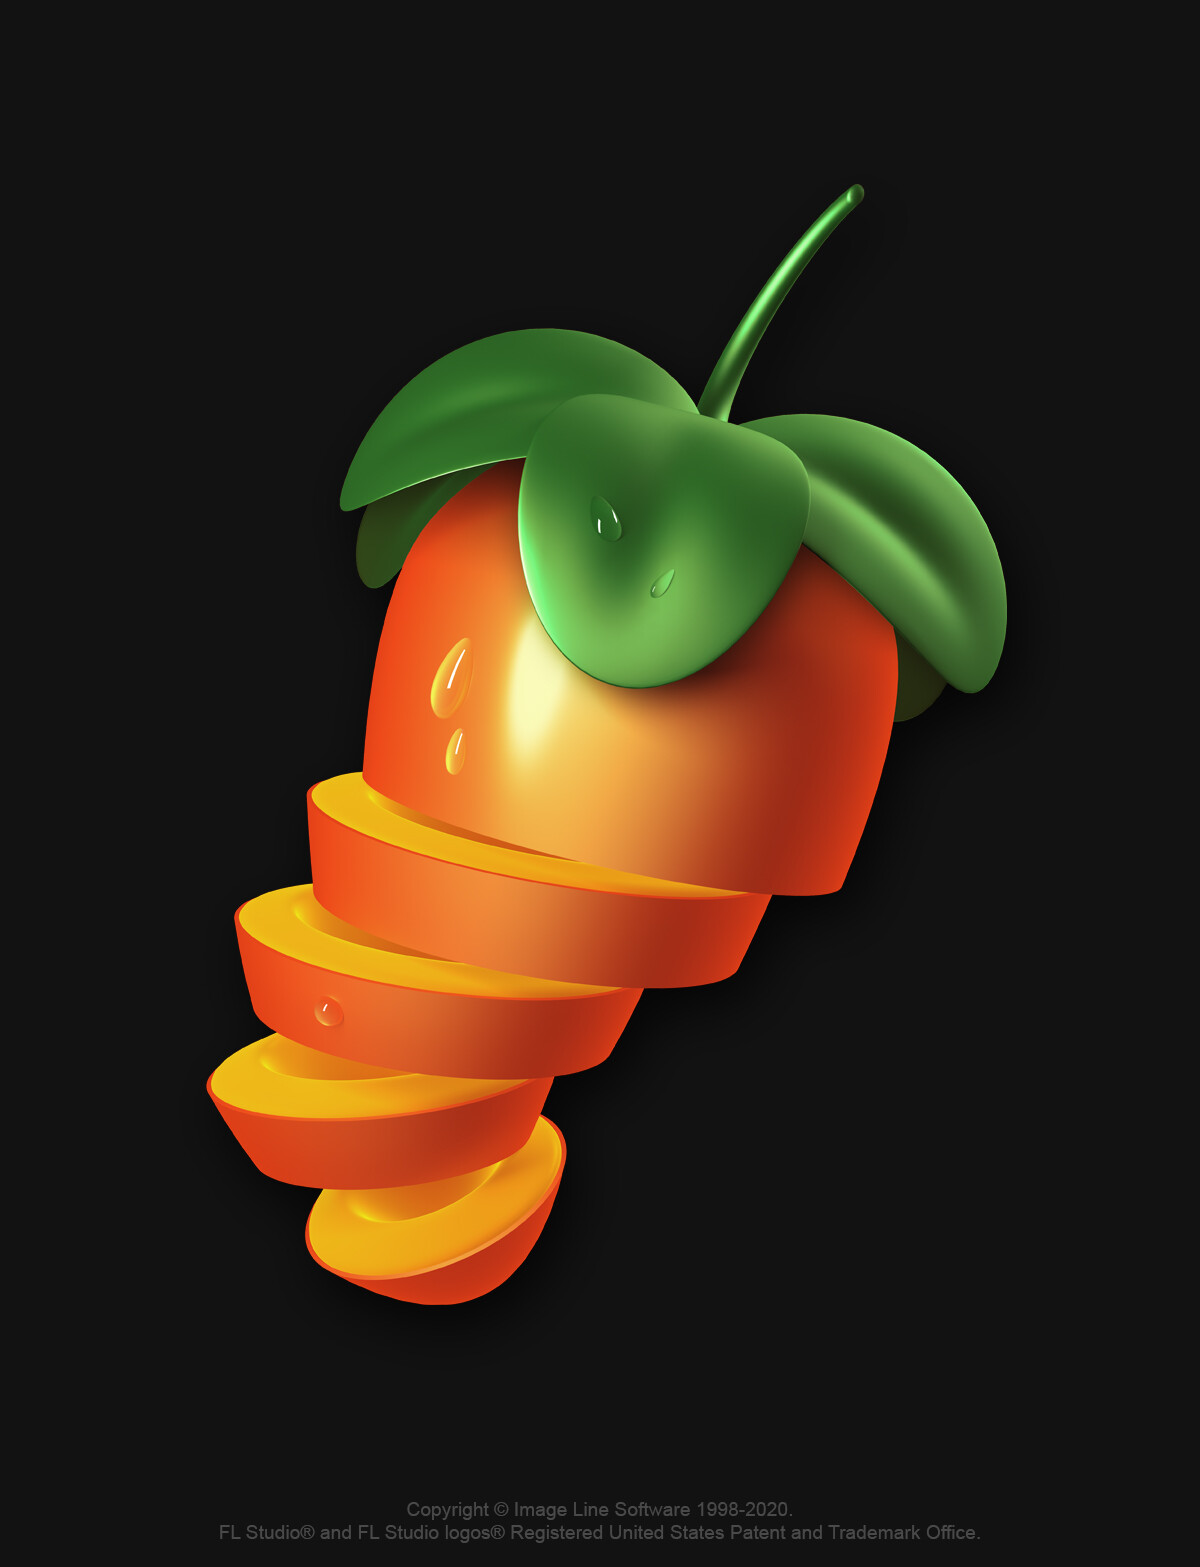 ArtStation - FL Studio Logo Refreshing